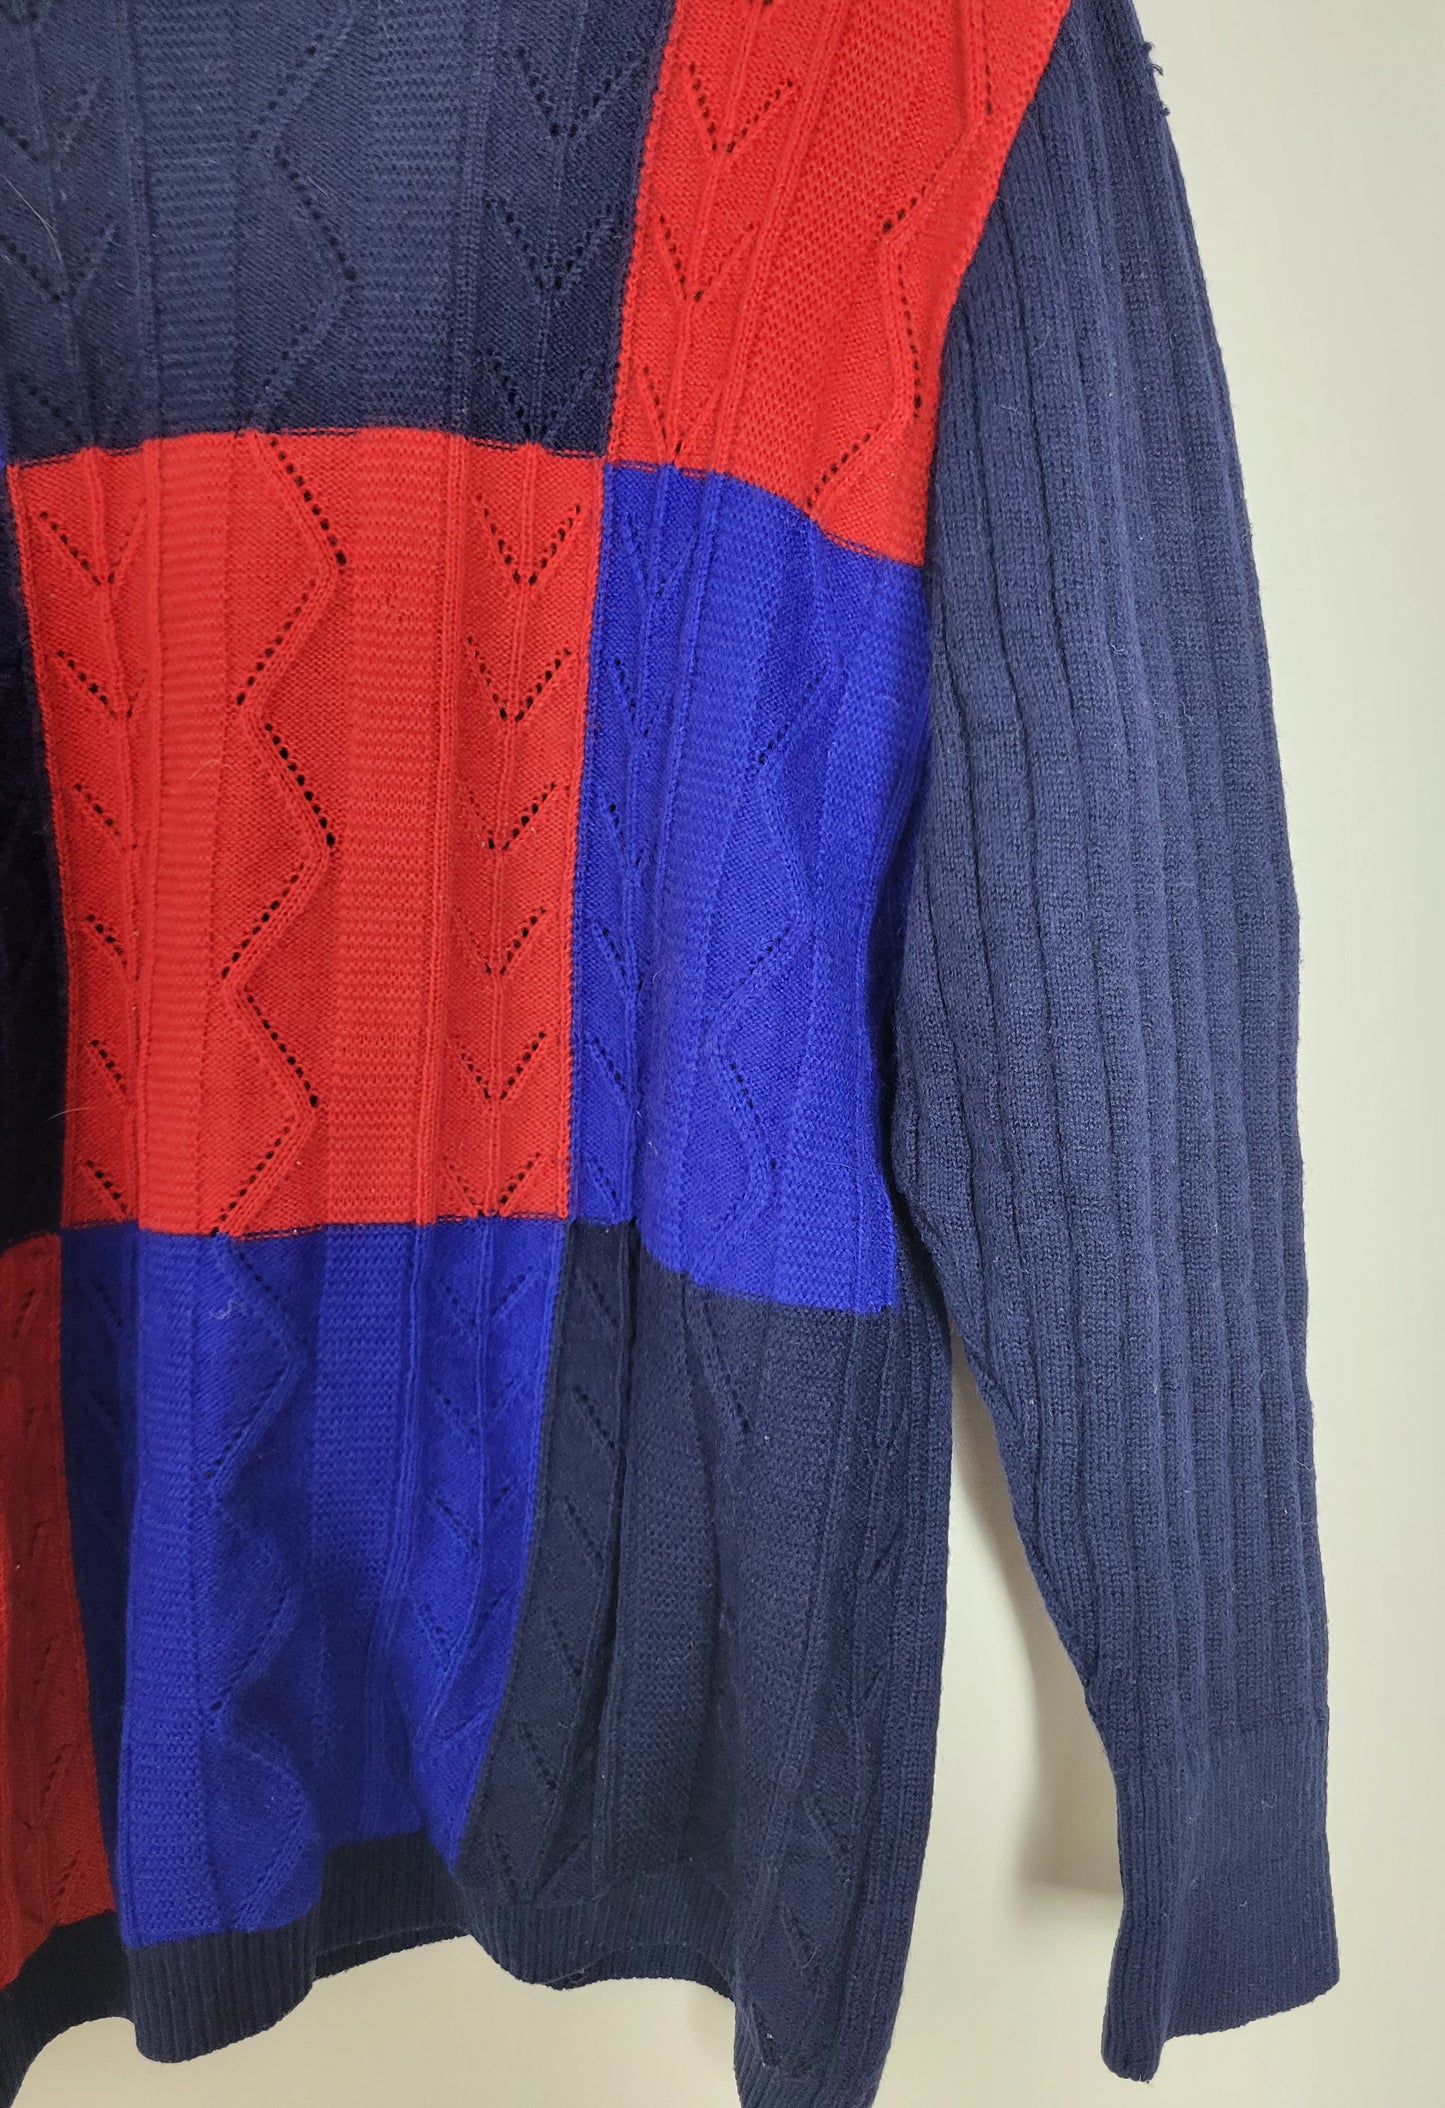 YVES SAINT LAURENT - Vintage Pullover - Muster - Bunt - Herren - XL